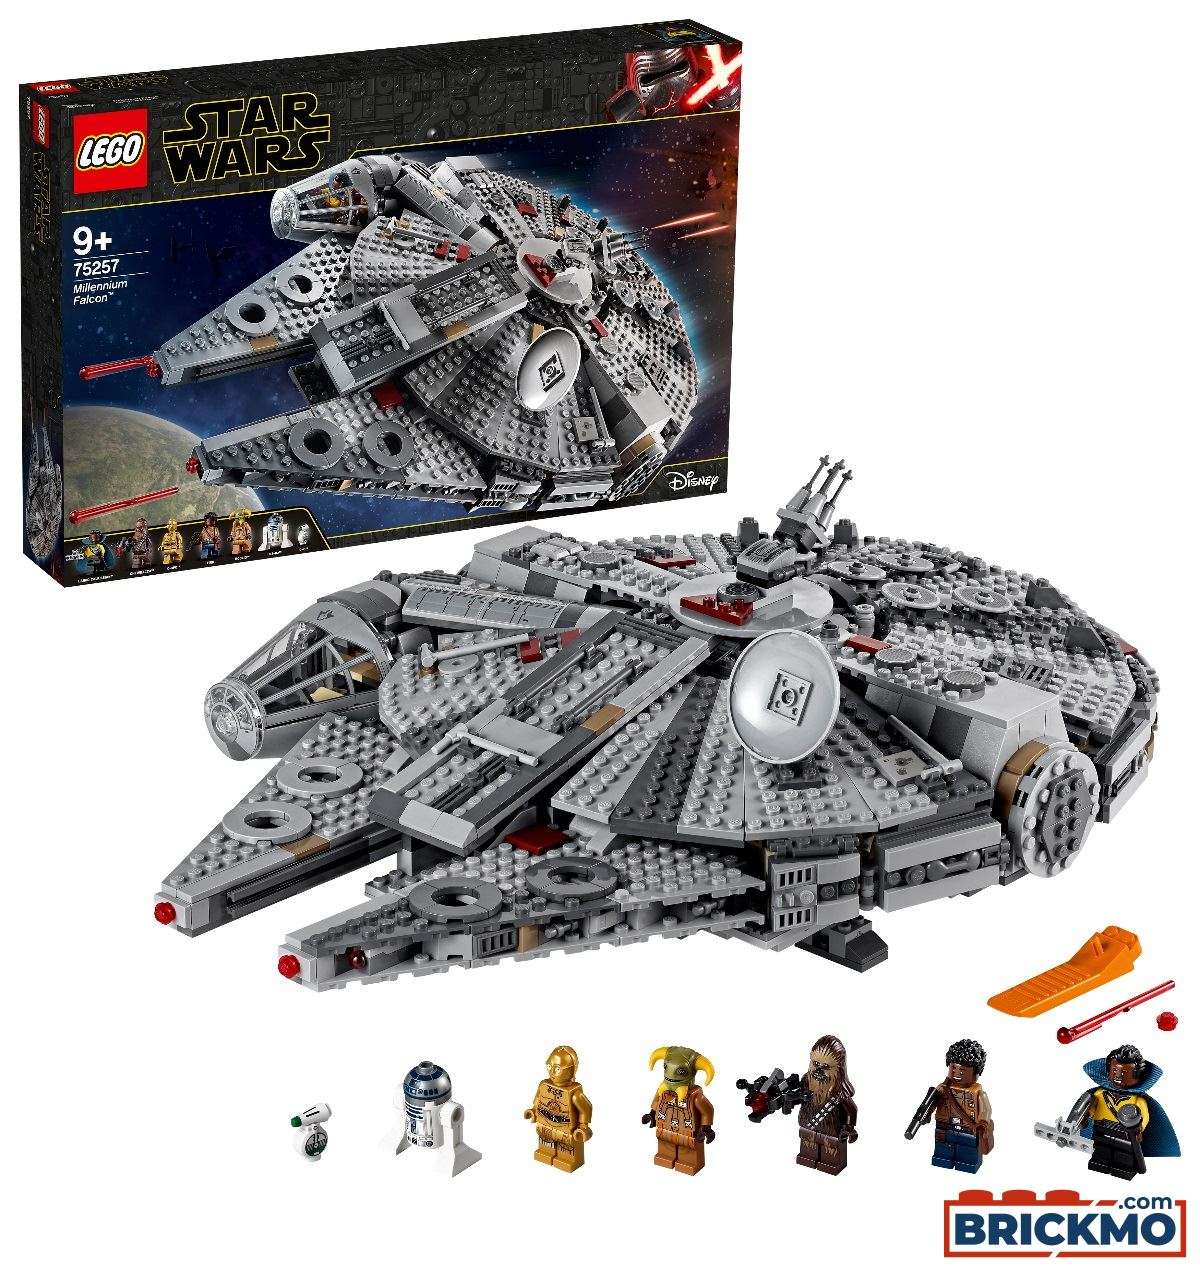 LEGO Star Wars 75257 Millennium Falcon 75257